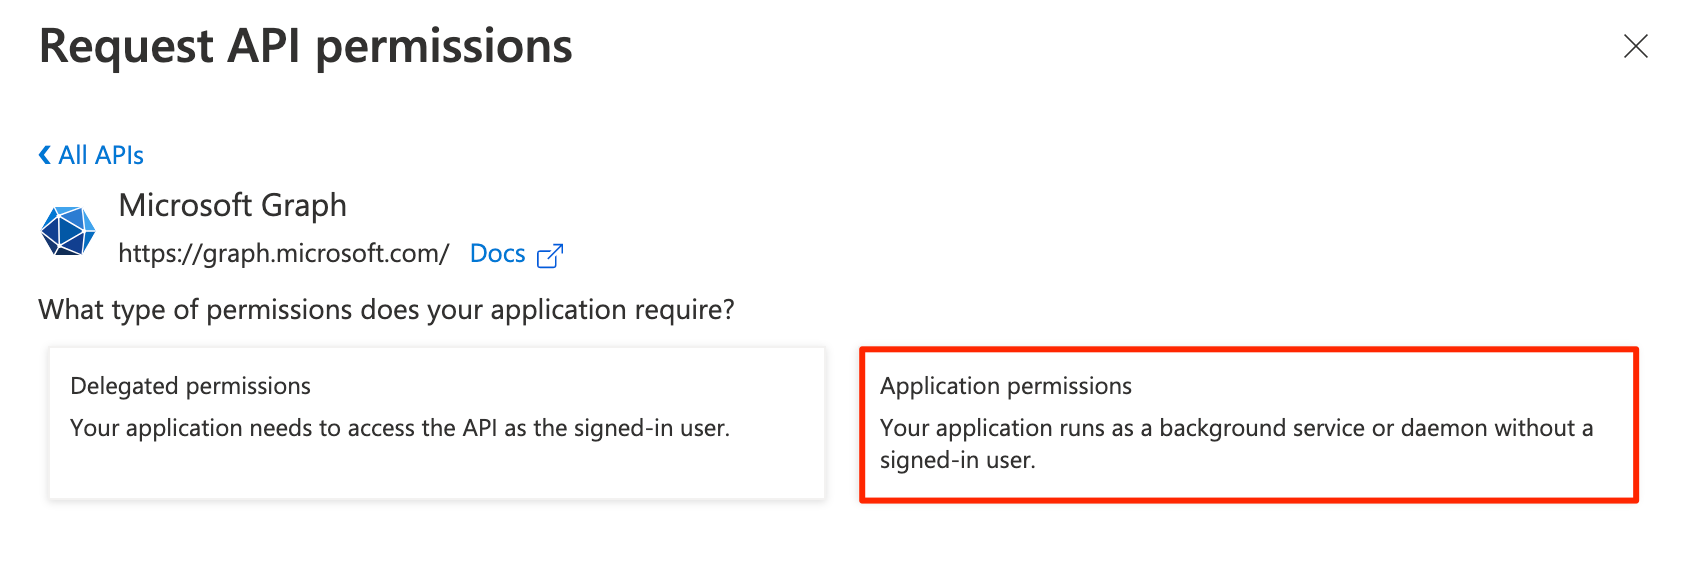 Request_API_permissions_-_Microsoft_Azure.png